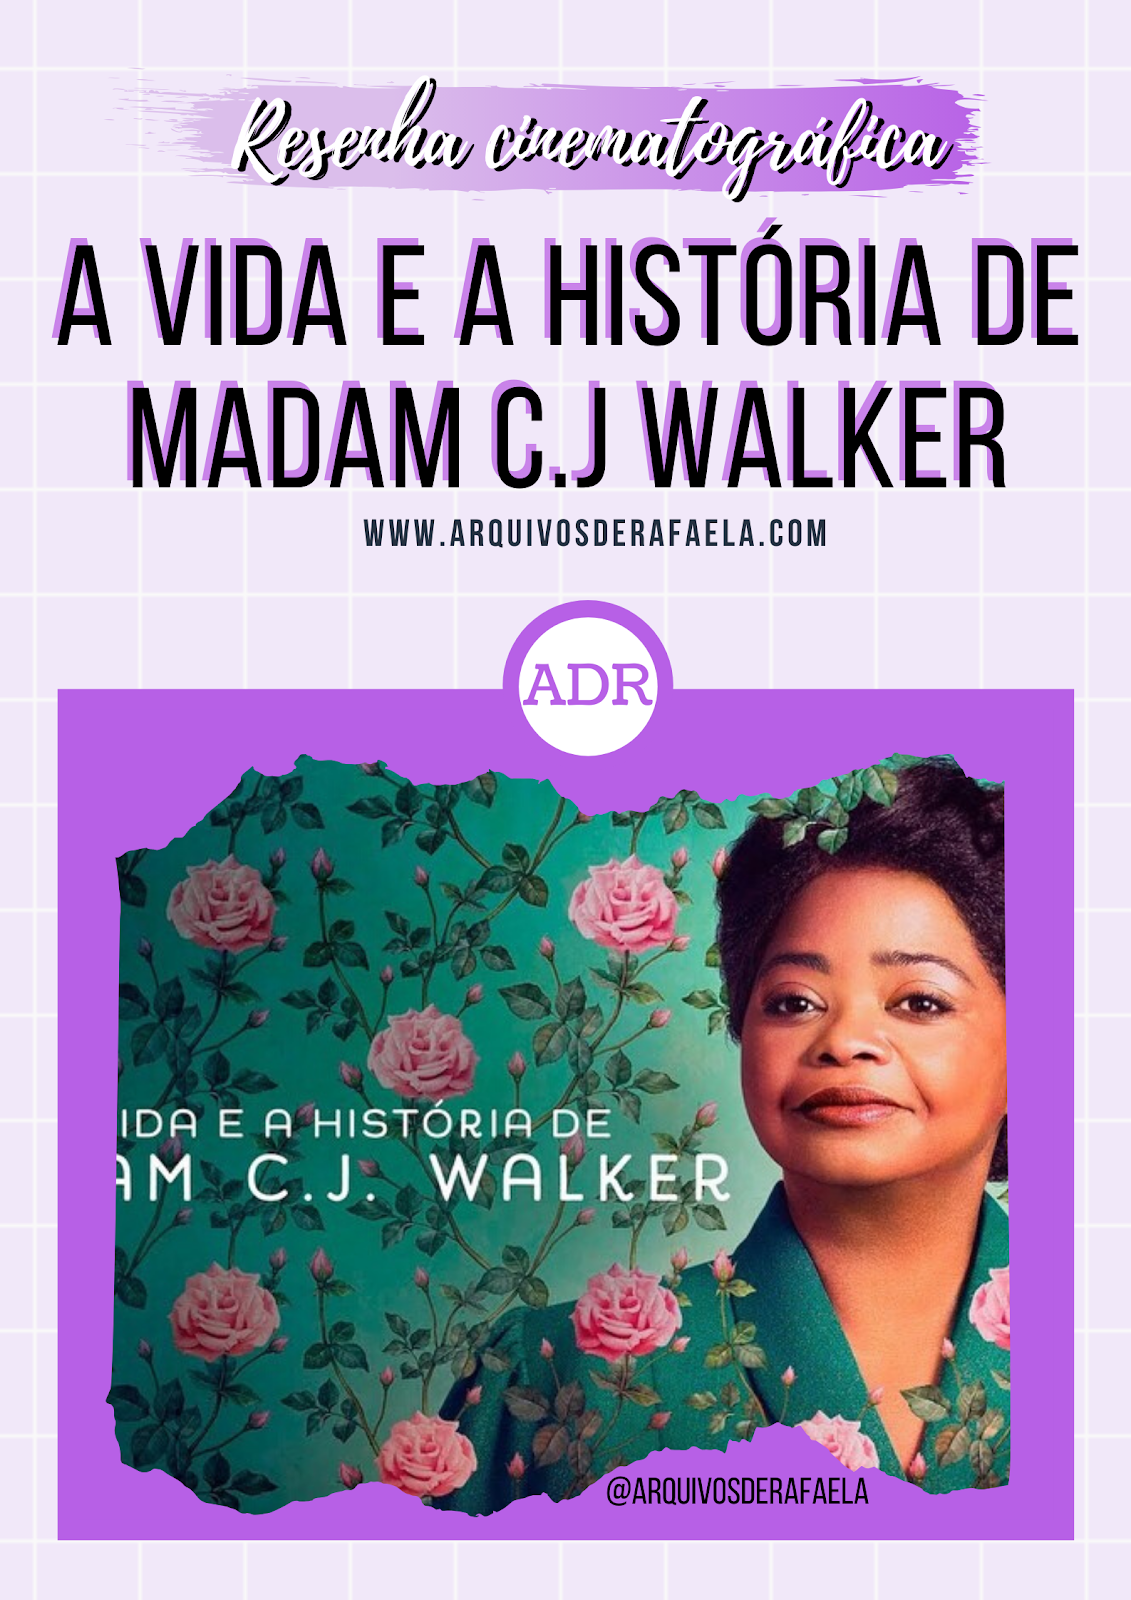 Resenha: A vida e a História de Madam C.J. Walker